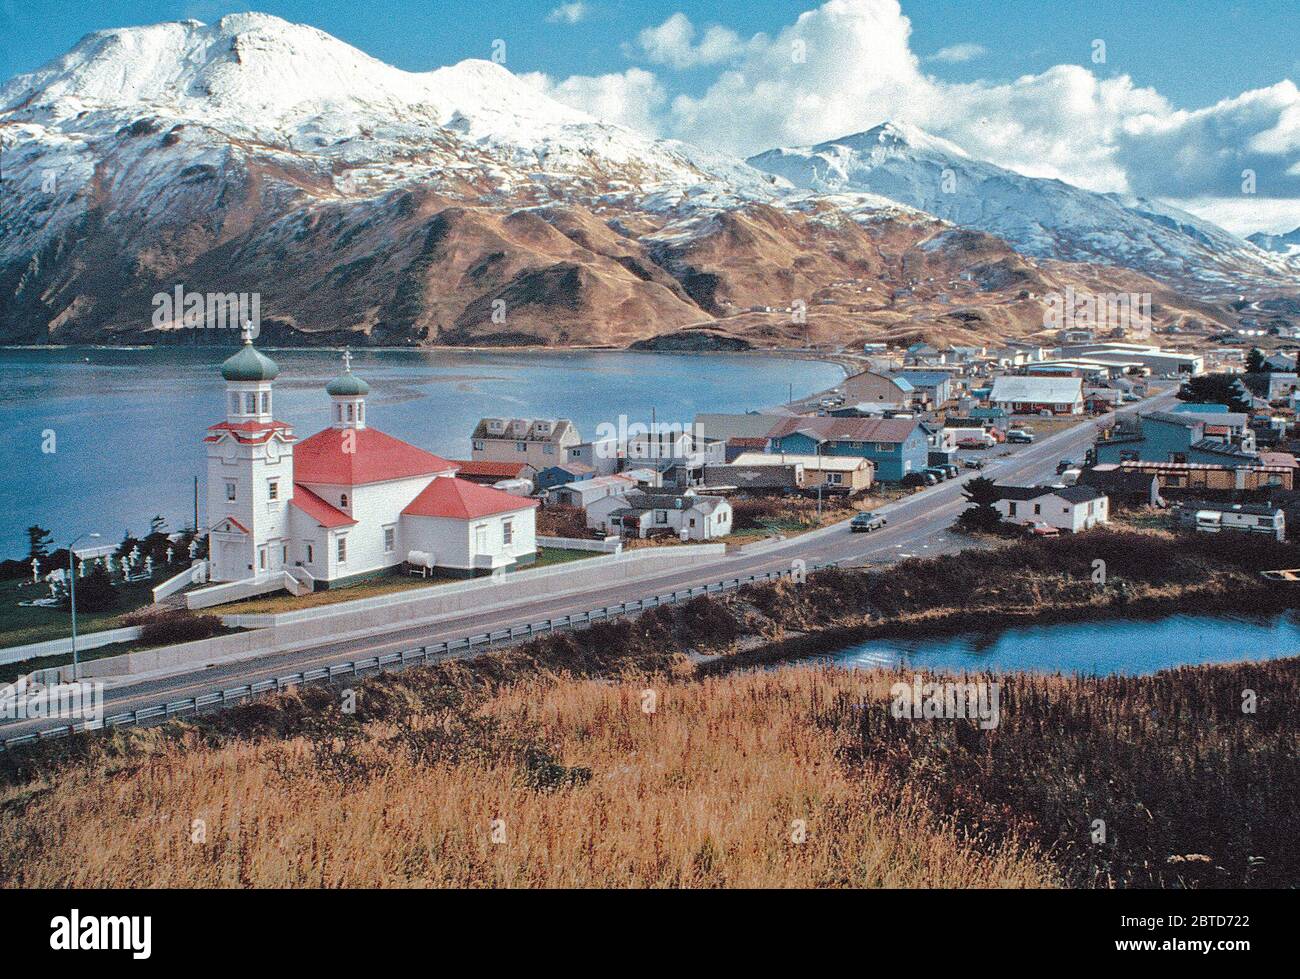 Le rouge et le vert d'un toit de style russe-orthodoxe eglise apporte une touche de couleur à l'hiver dans ce paysage montagneux scène Unalaska. Banque D'Images